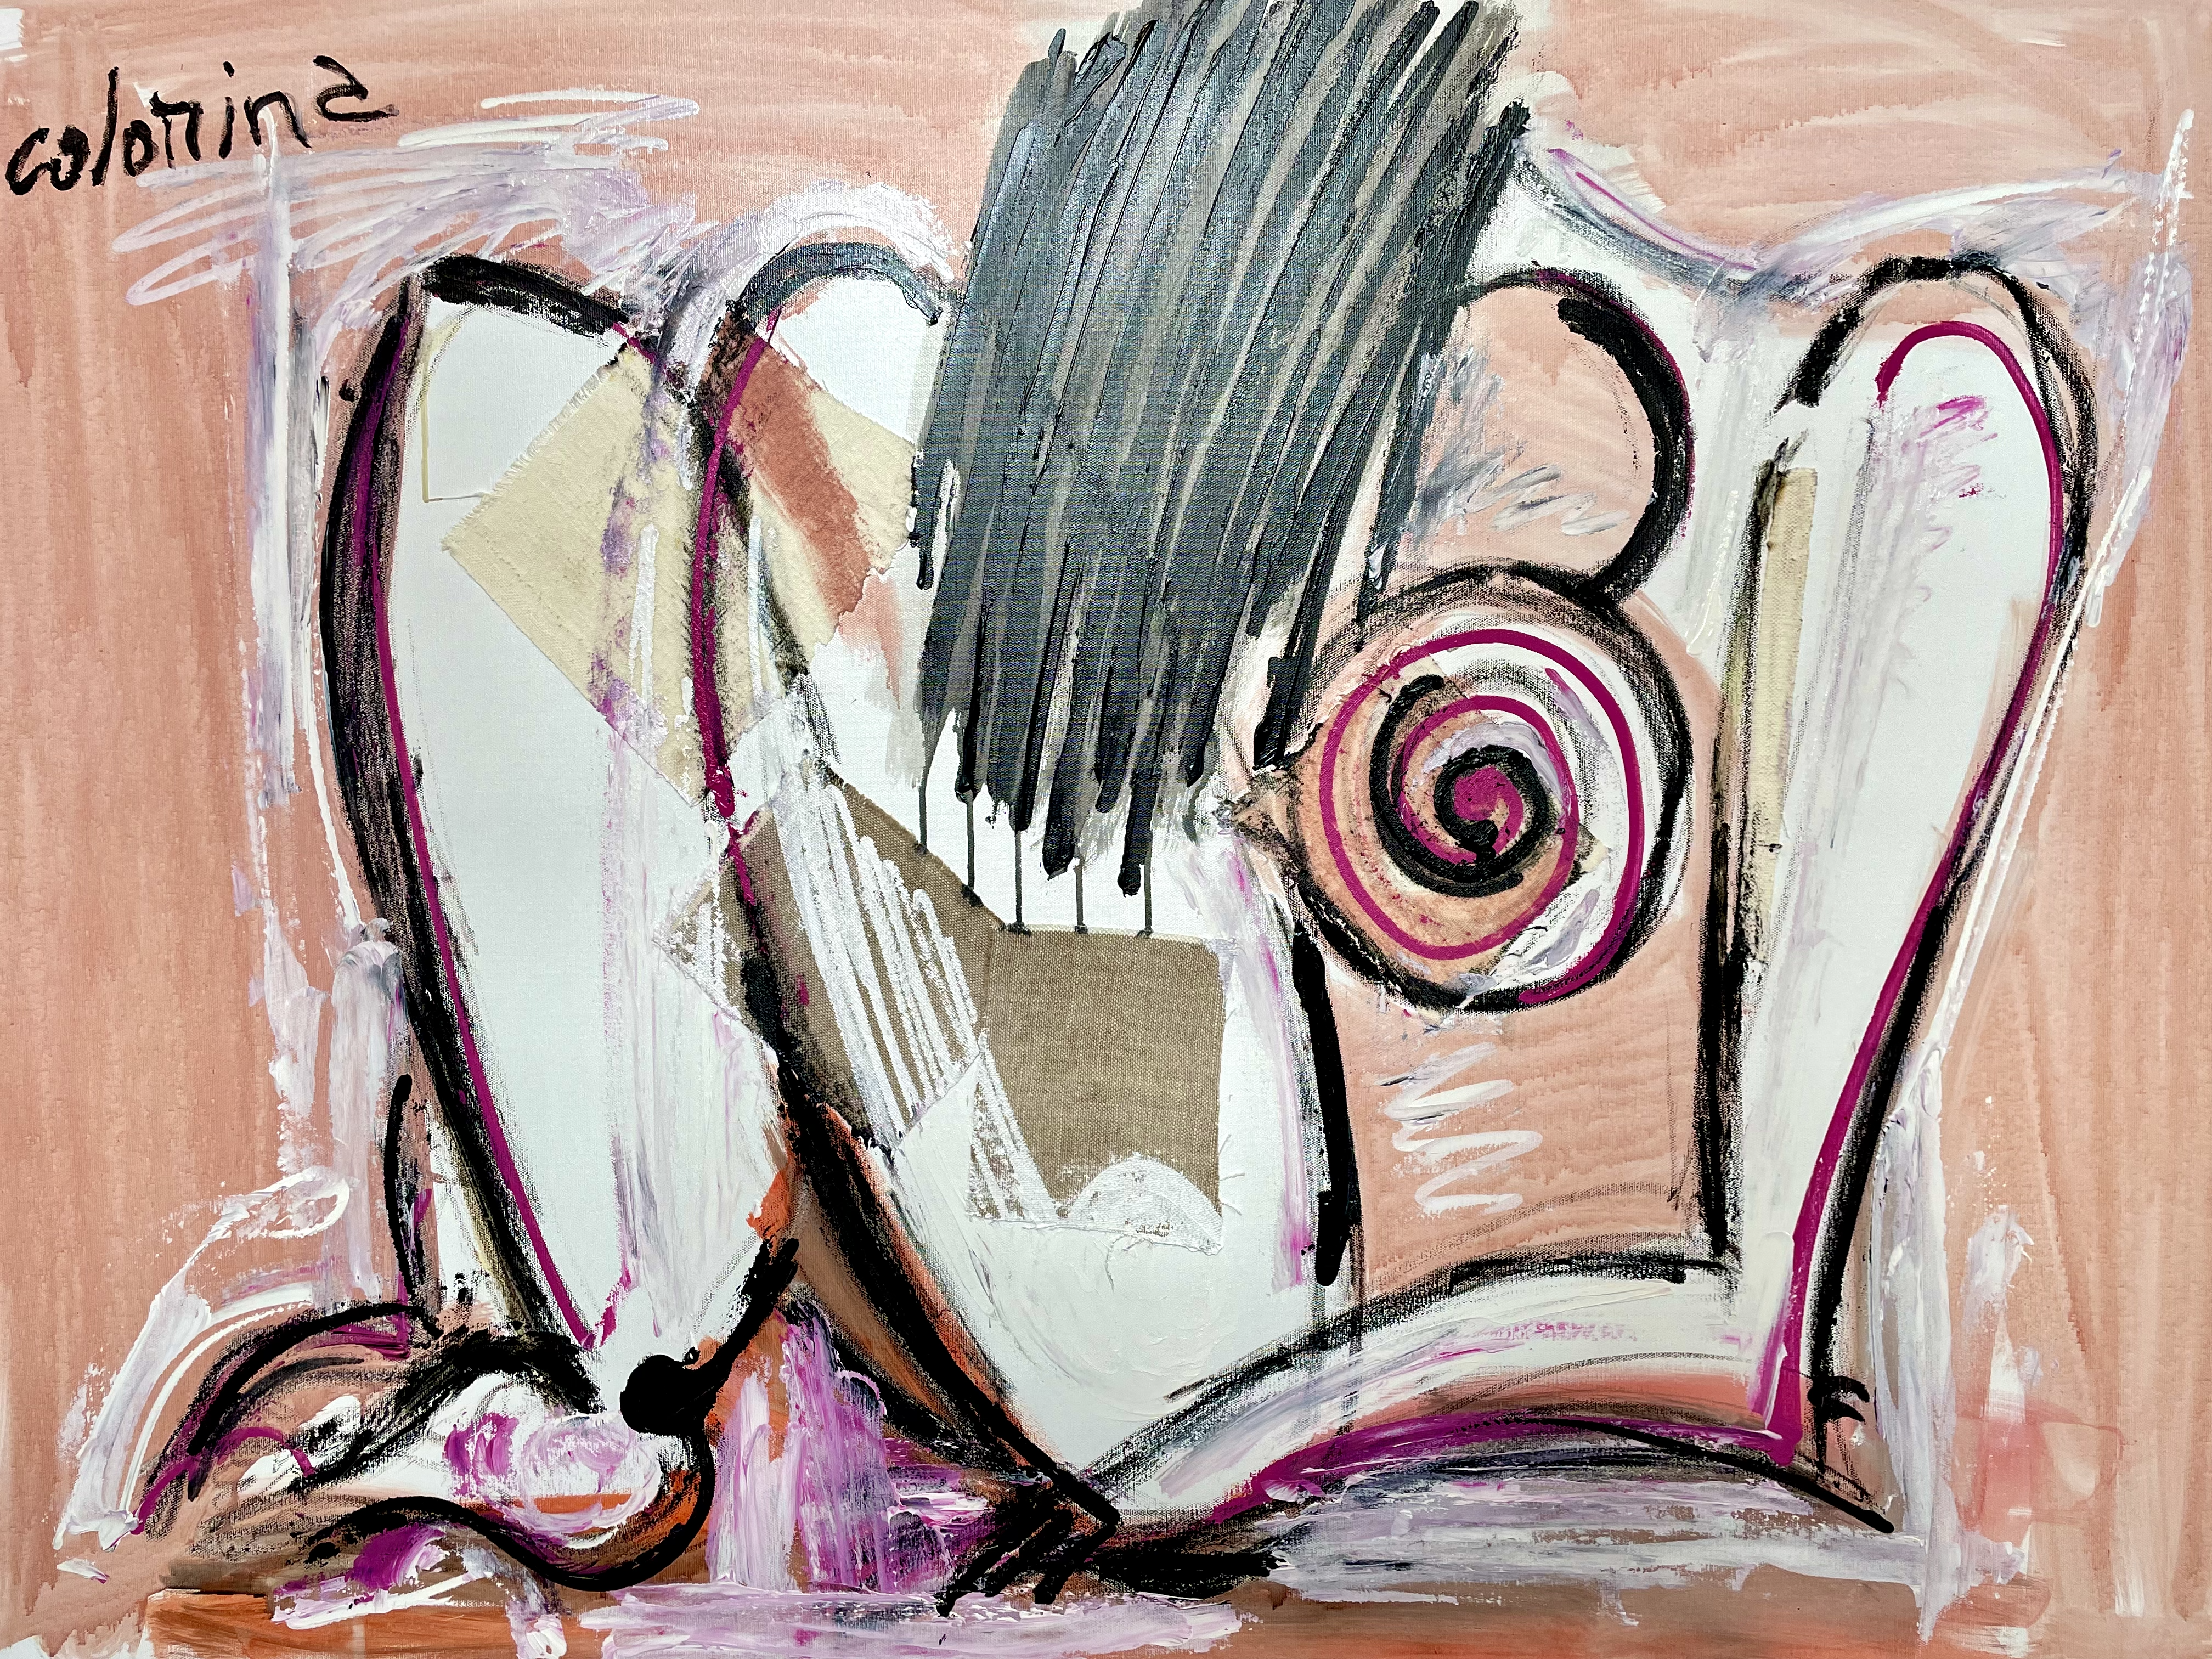 Nu rose_130x97 cm_Oeuvre de l'artiste Jorge Colomina à la Galerie Maner_art contemporain_art abstrait